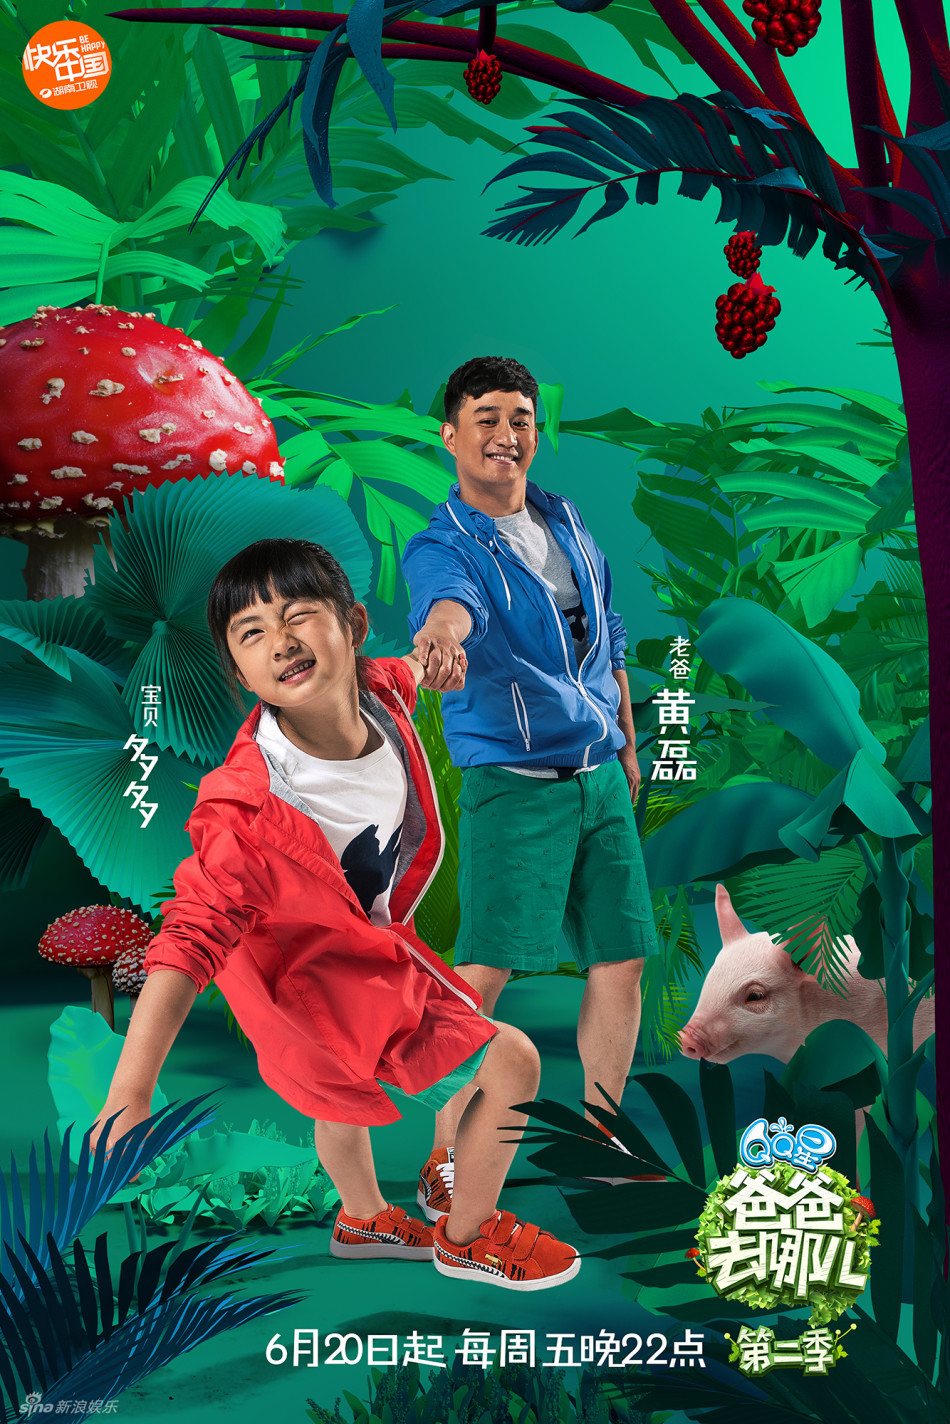 《爸爸去哪儿》第二季海报首度曝光,以丛林探险为主题,萌娃各具特色